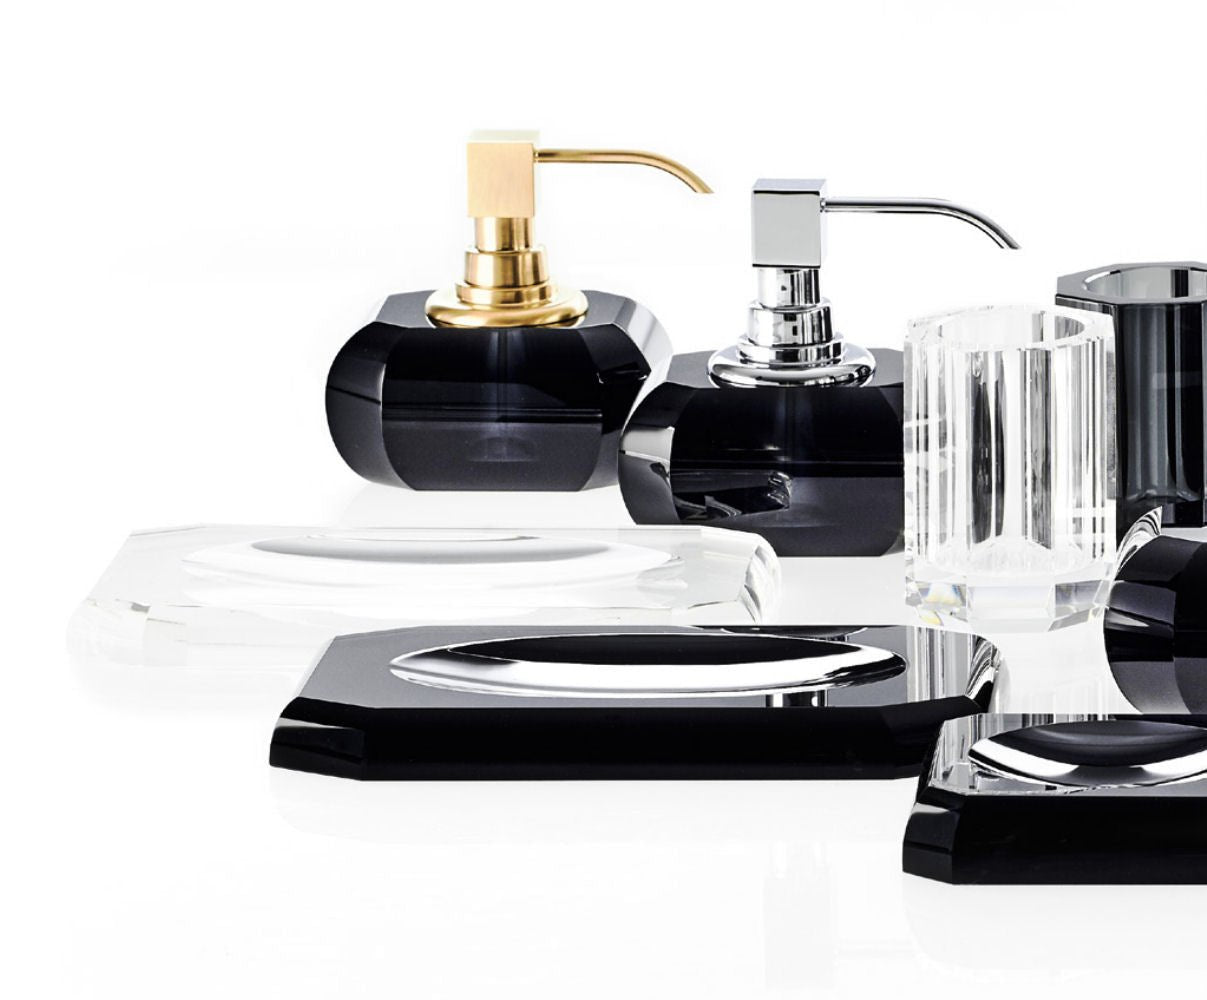 Black Glass Bathroom Accessories Soap Dish by Decor Walther - |VESIMI Design|